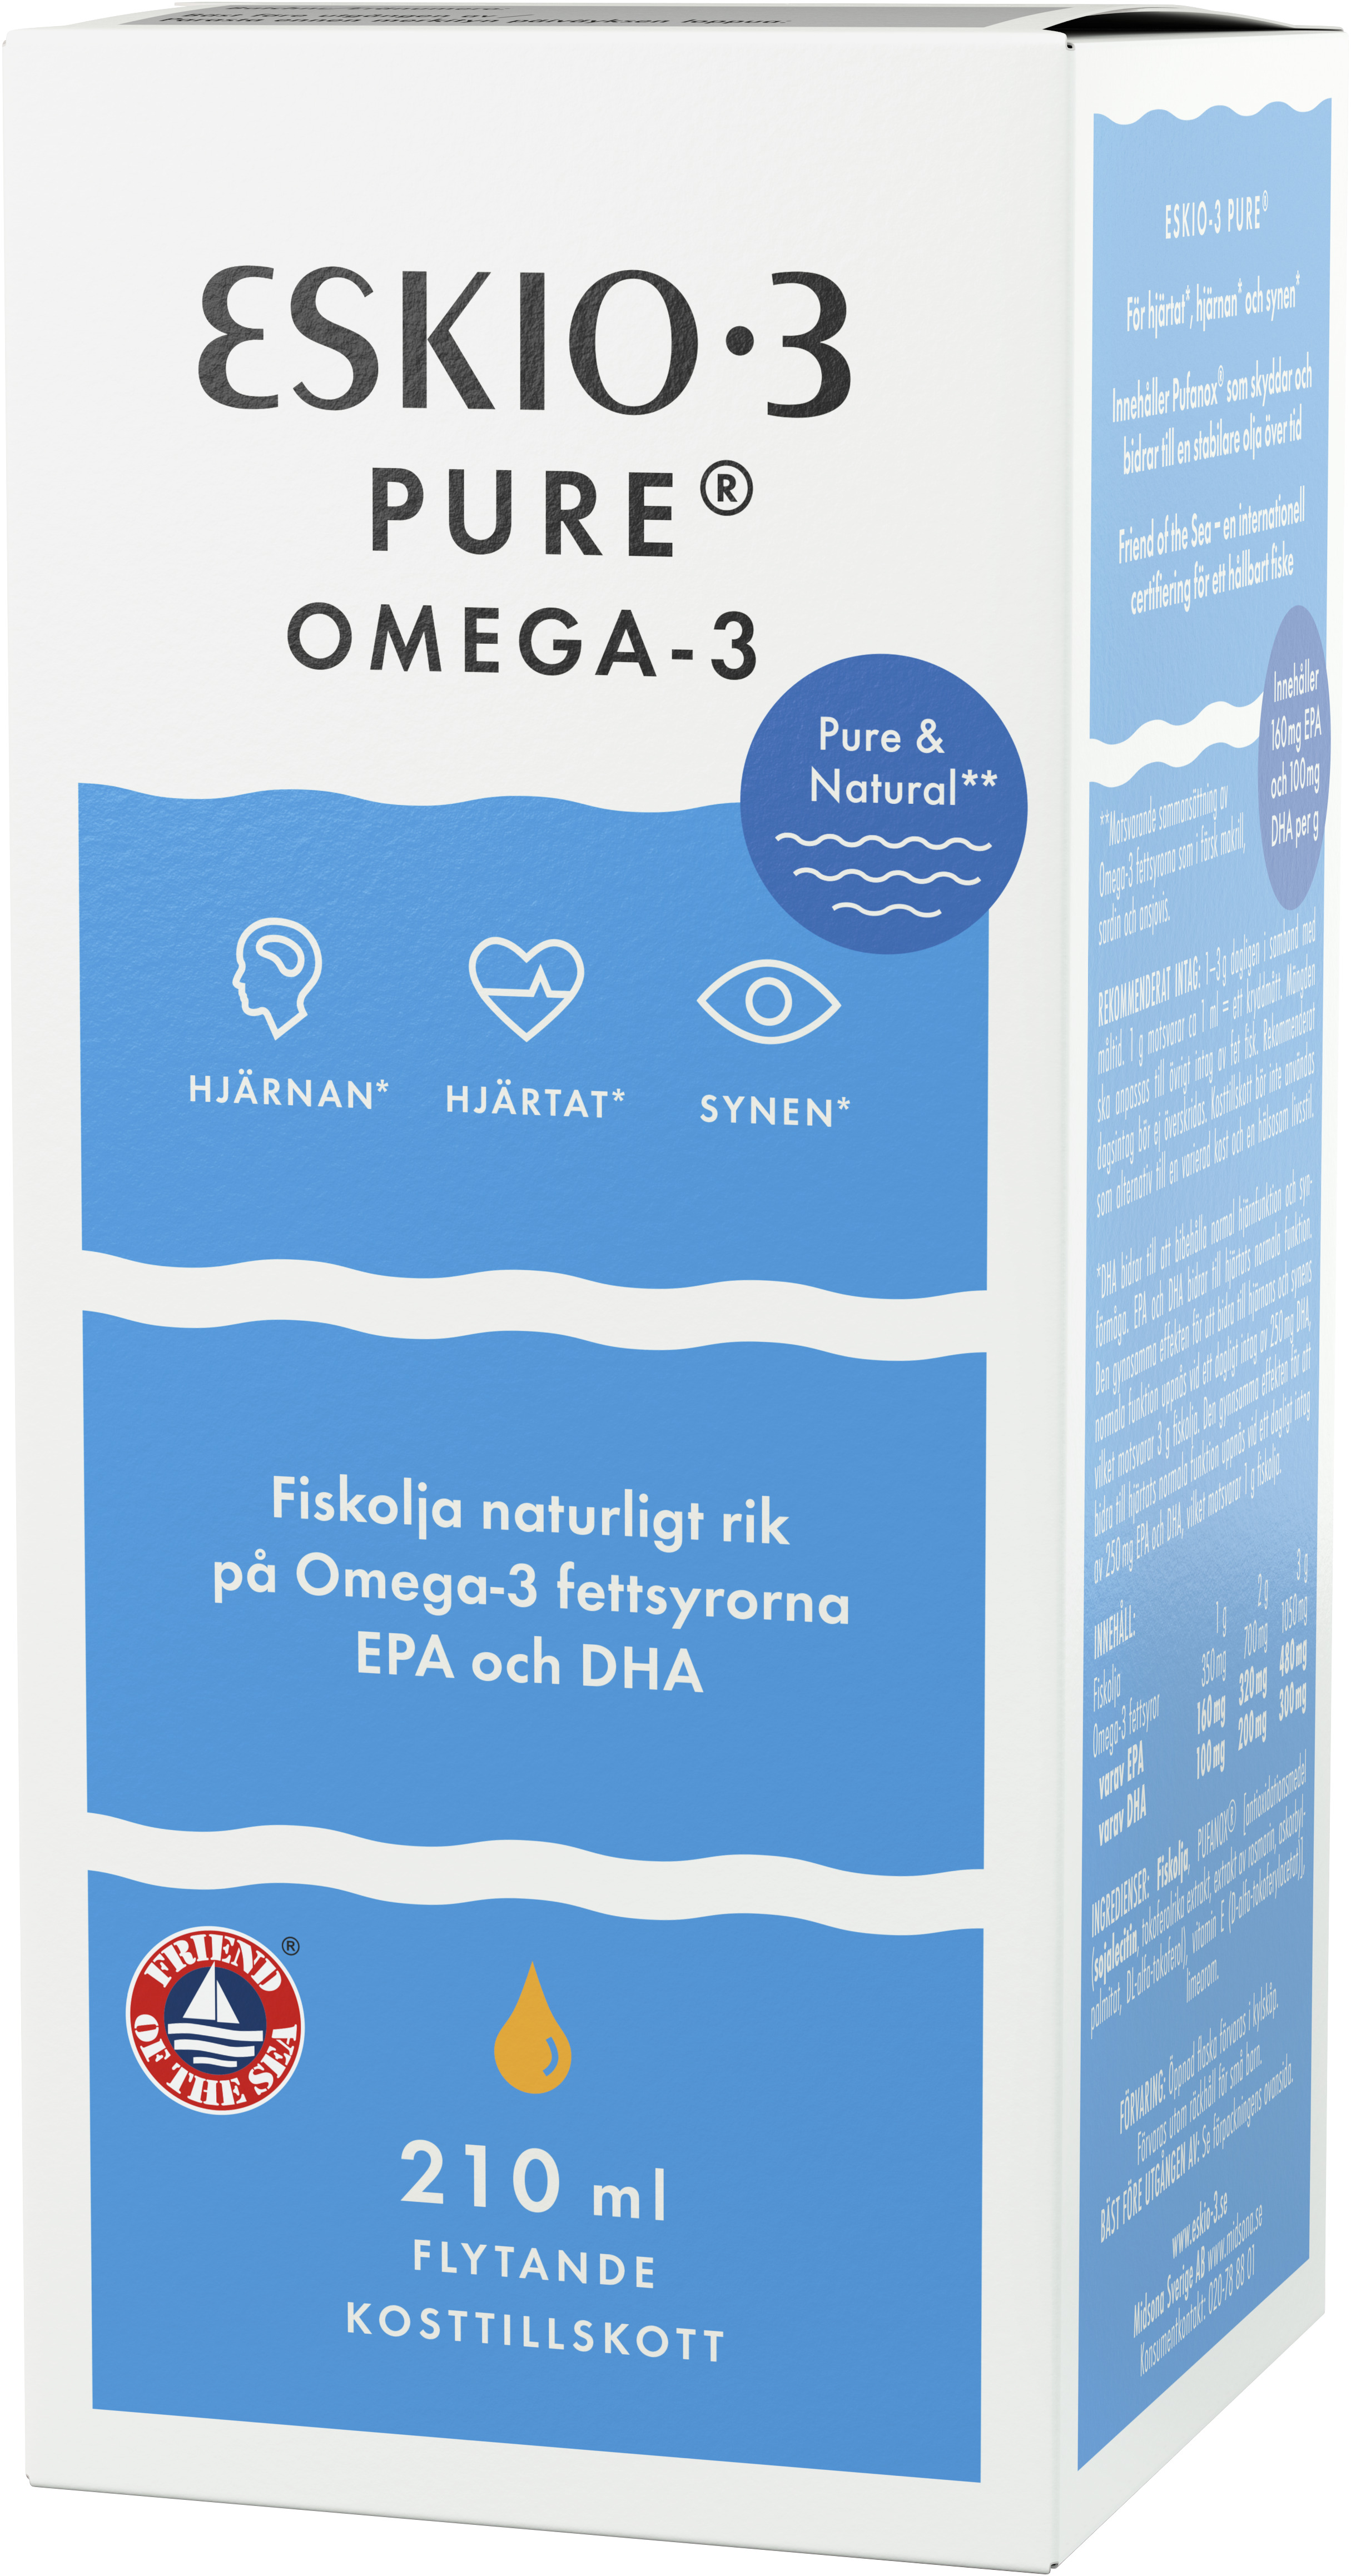 Eskio-3 Pure Omega-3 210 ml